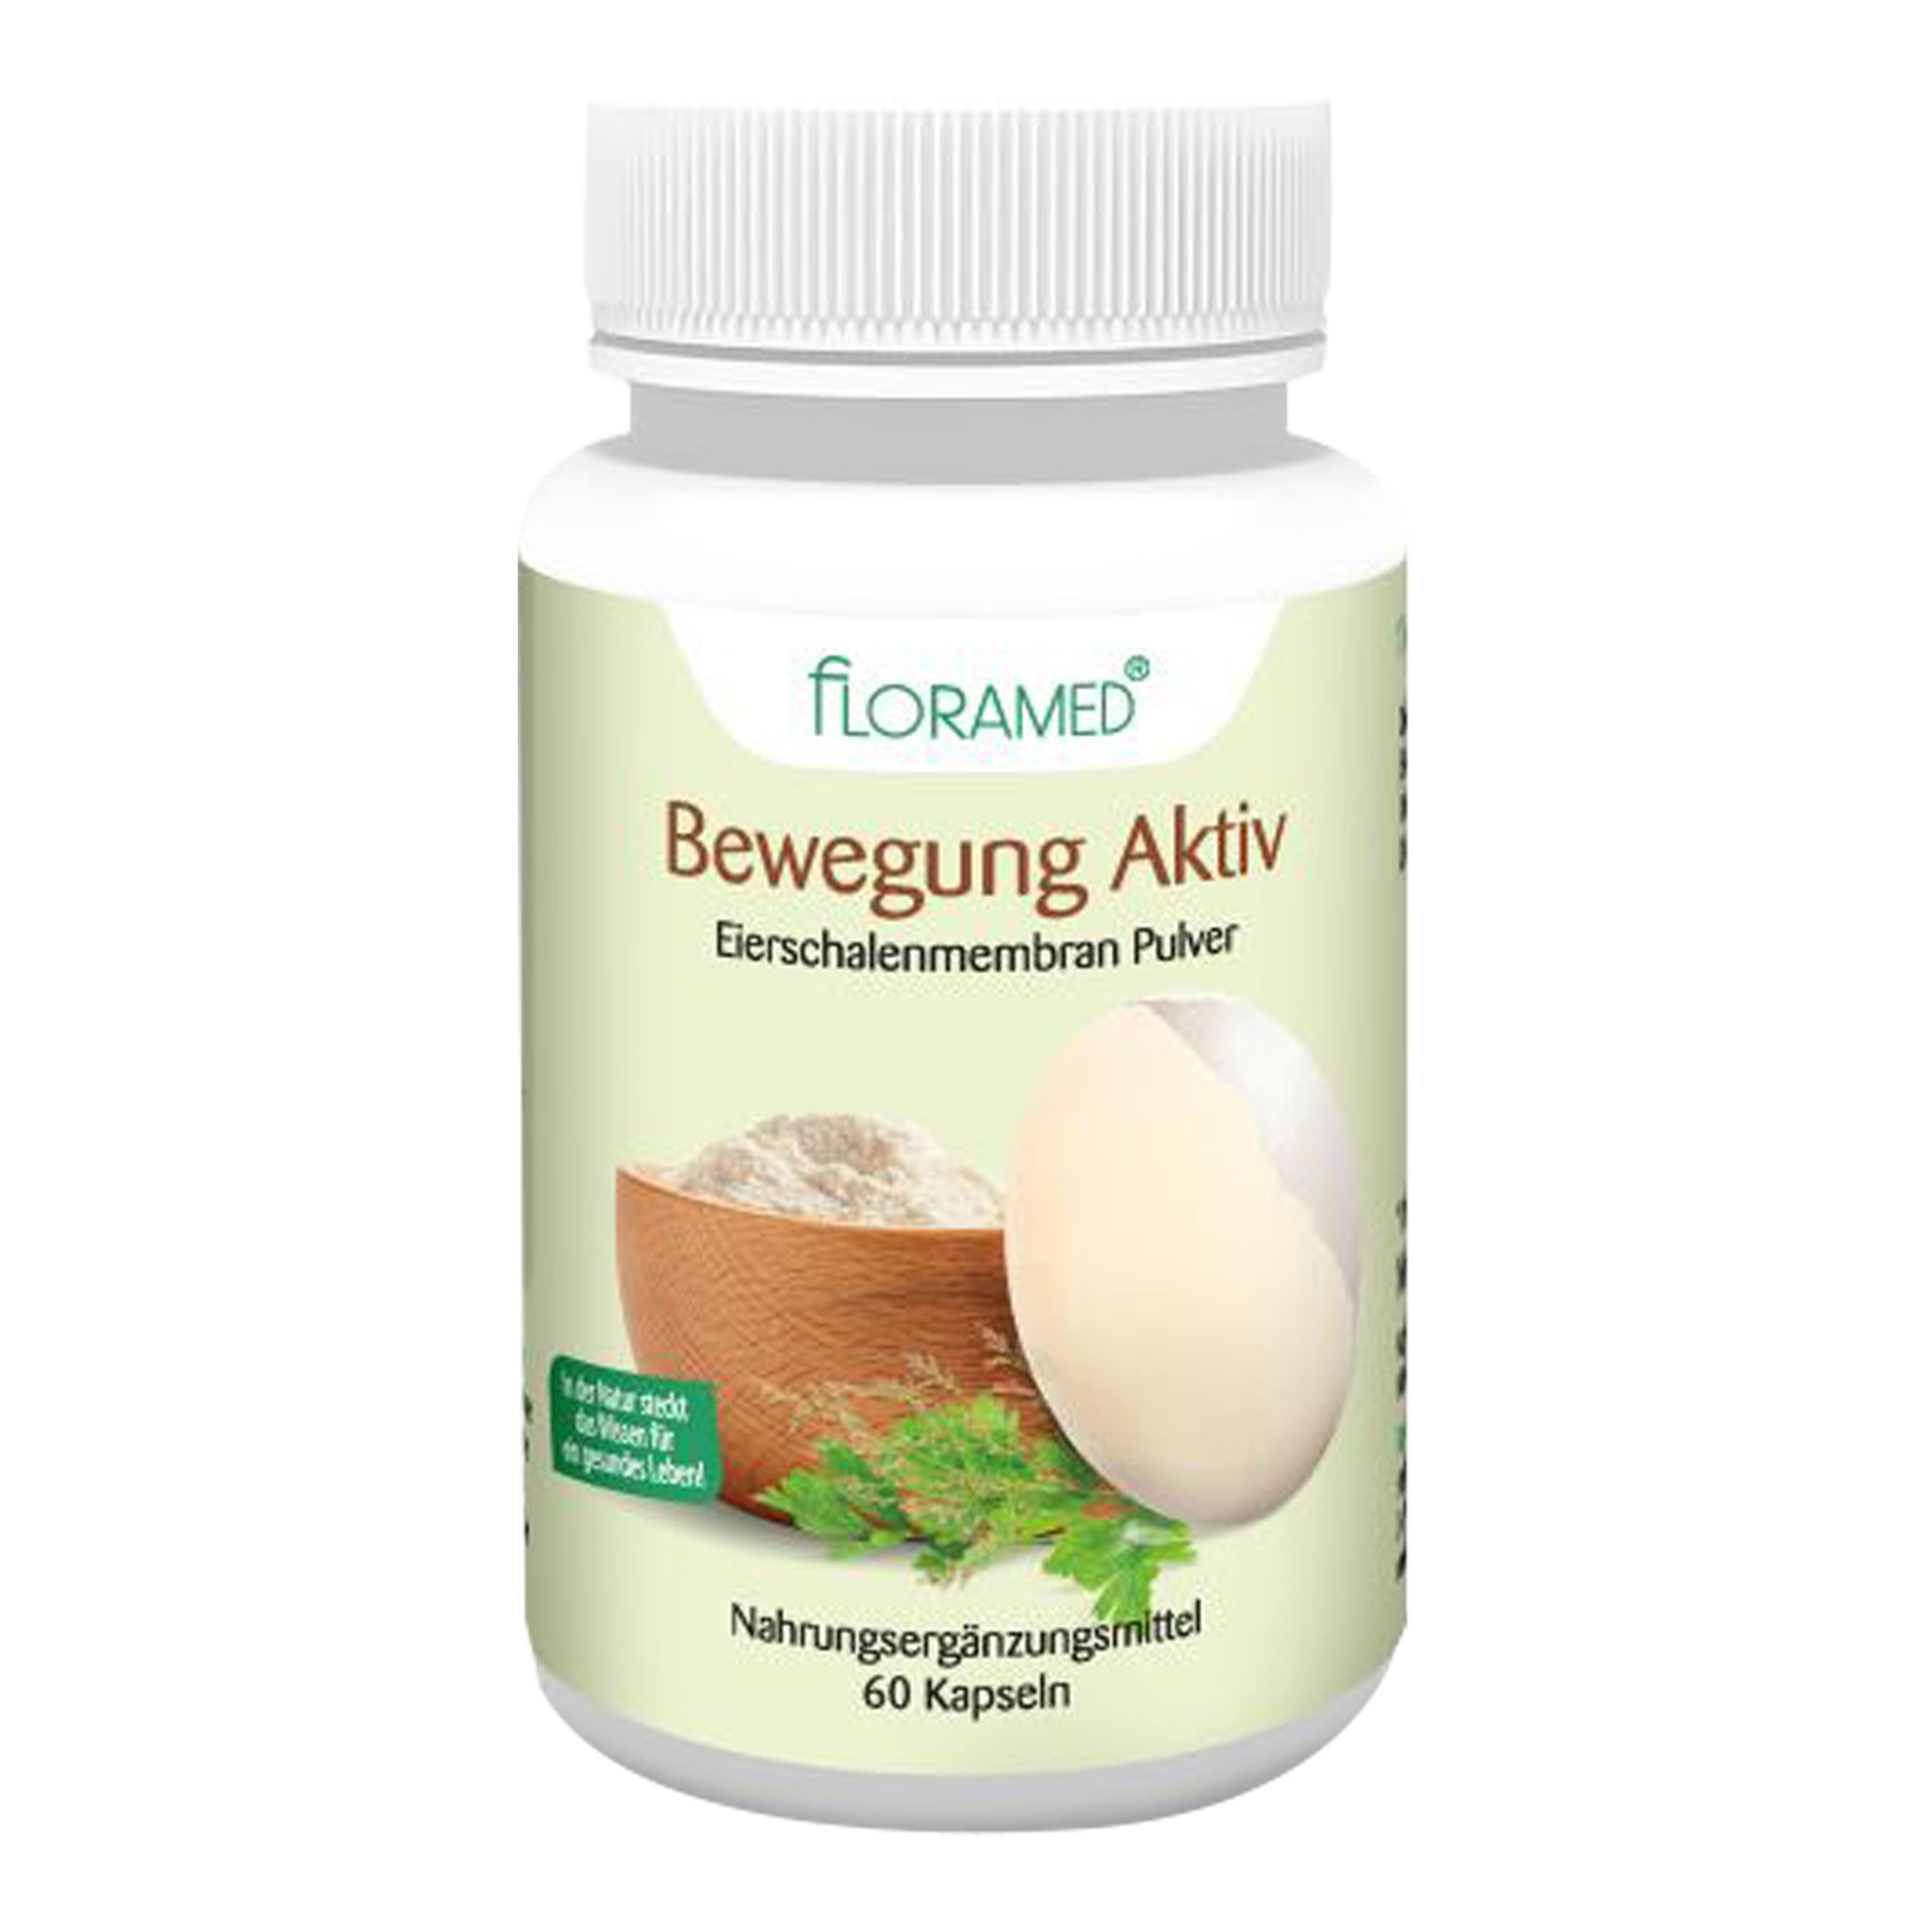 Nahrungsergänzungsmittel mit Eierschalenmembran-Pulver, Vitamin C und Zink.